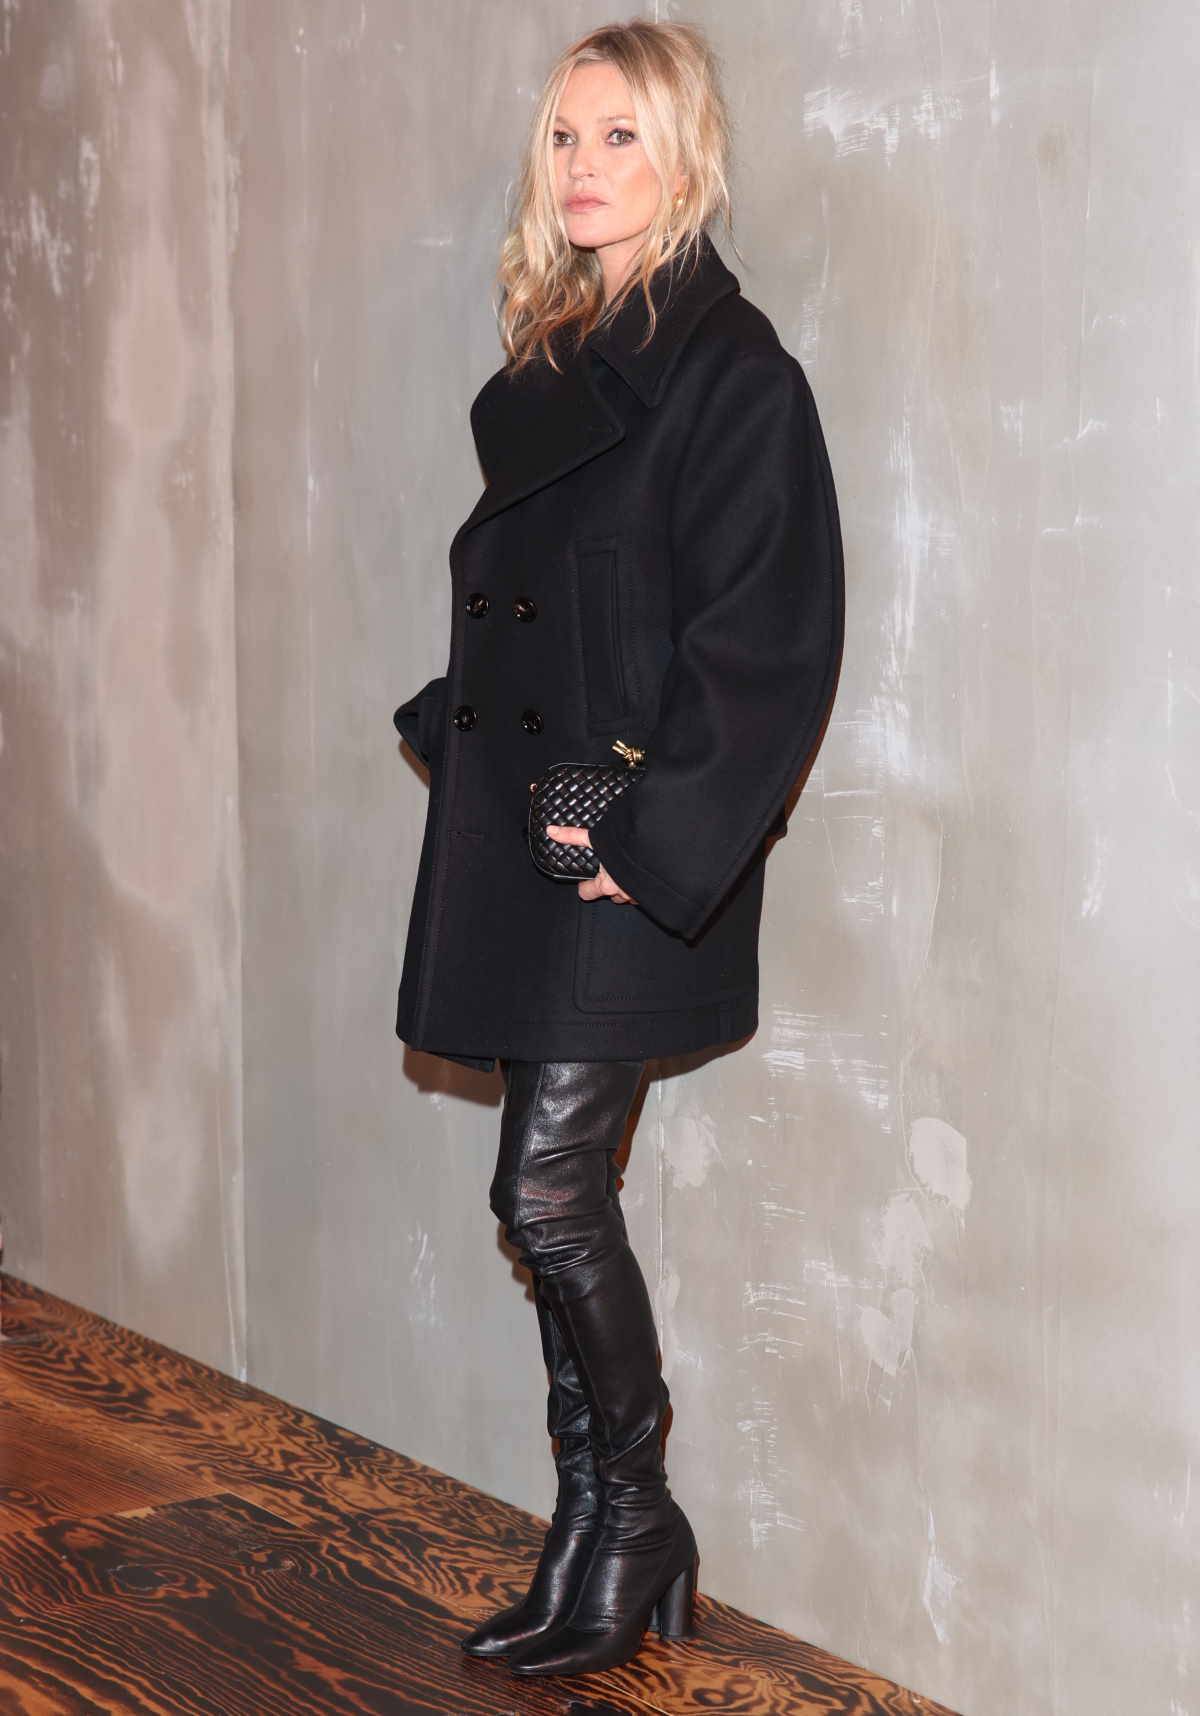 Kozaki do połowy uda to must-have dla Seleny Gomez i Kate Moss. W czarnych skórzanych muszkieterkach mogliśmy ostatnio podziwiać ikonę mody Kate Moss, która połączyła je z krótkim czarnym płaszczem z dwoma rzędami guzików i minitorebką. 